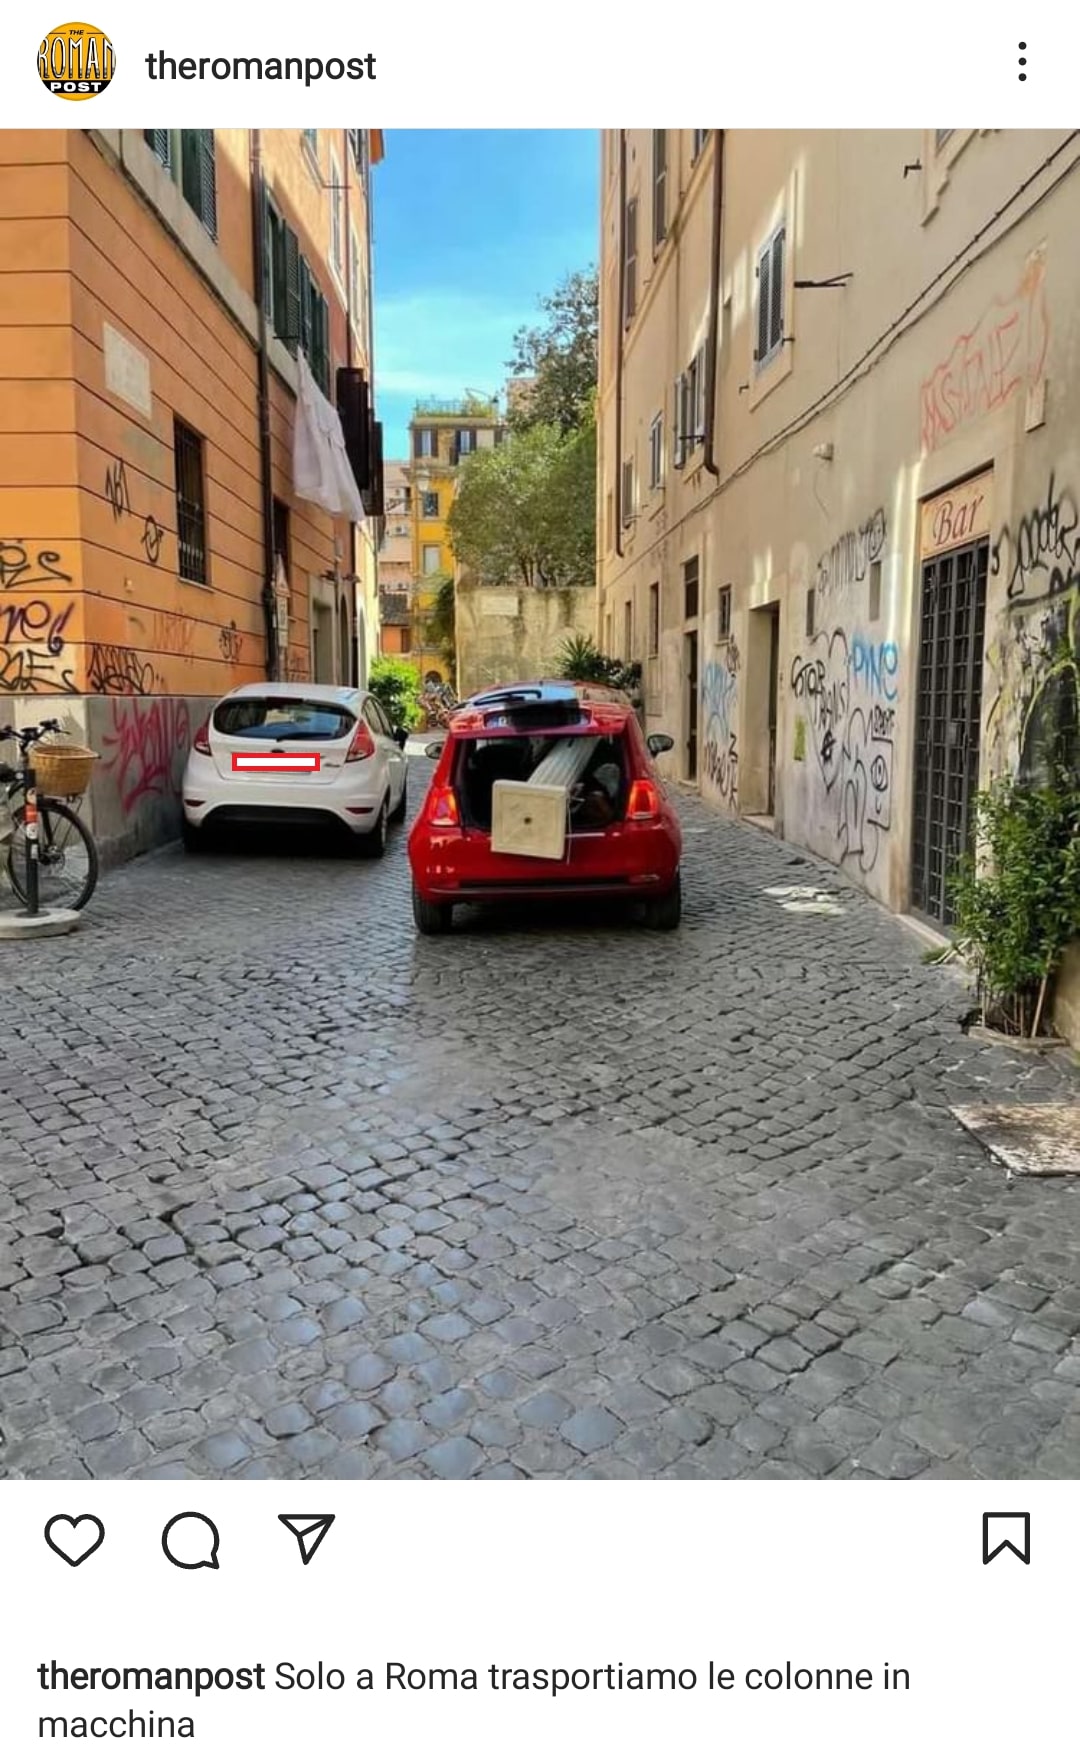 Dal centro antico di Roma, una colonna nel portabagagli di un'auto. Fonte: theromanpost - Instagram